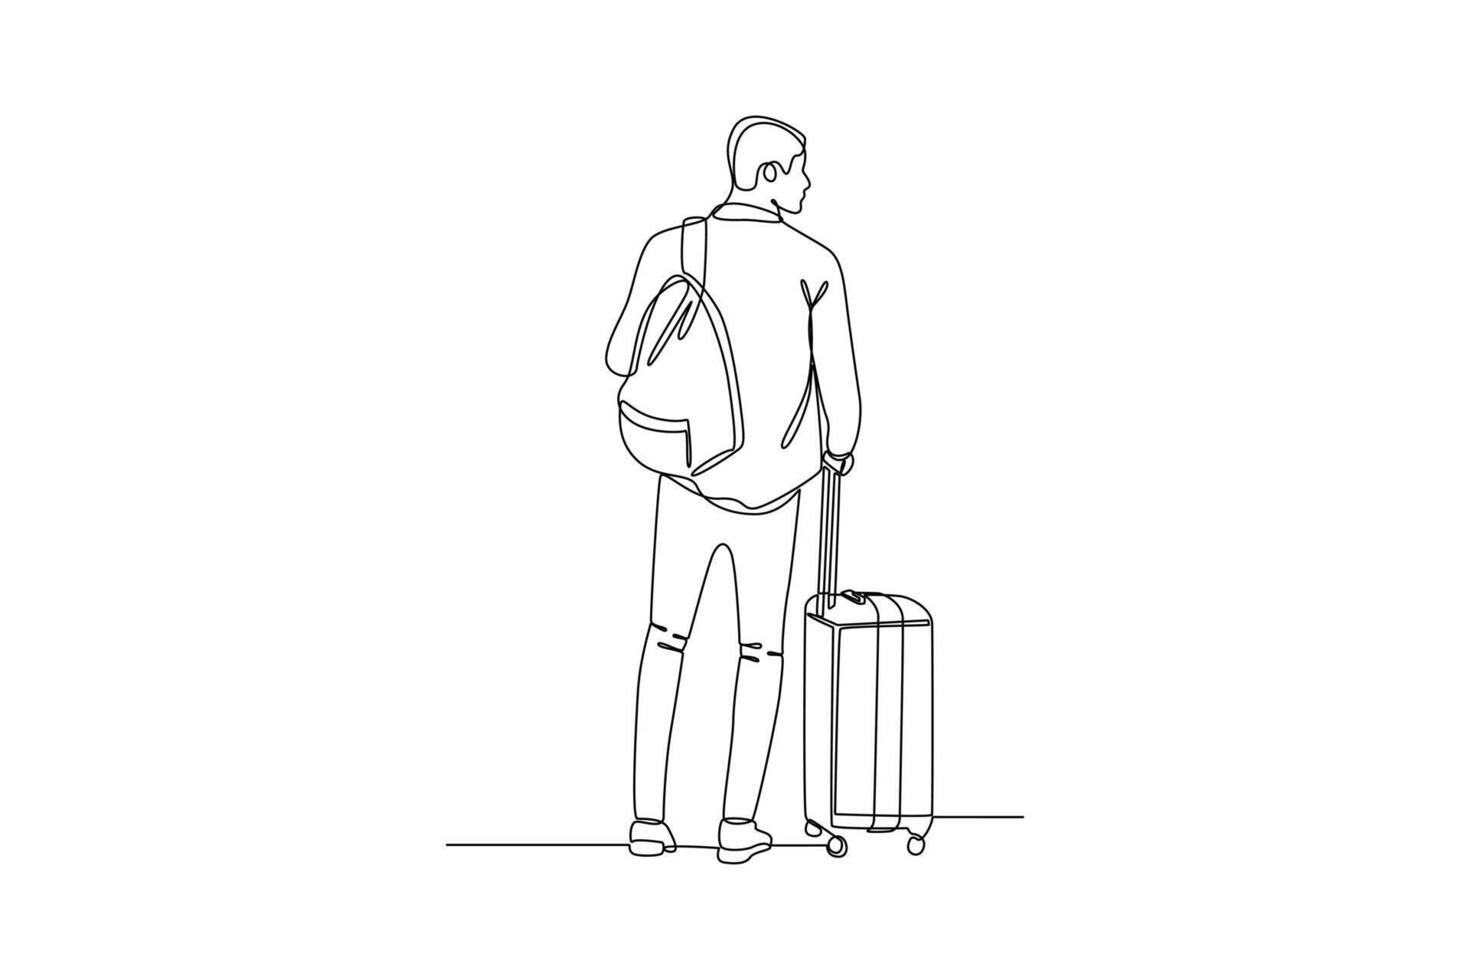 doorlopend een lijn tekening op reis met zak of koffer concept. tekening vector illustratie.